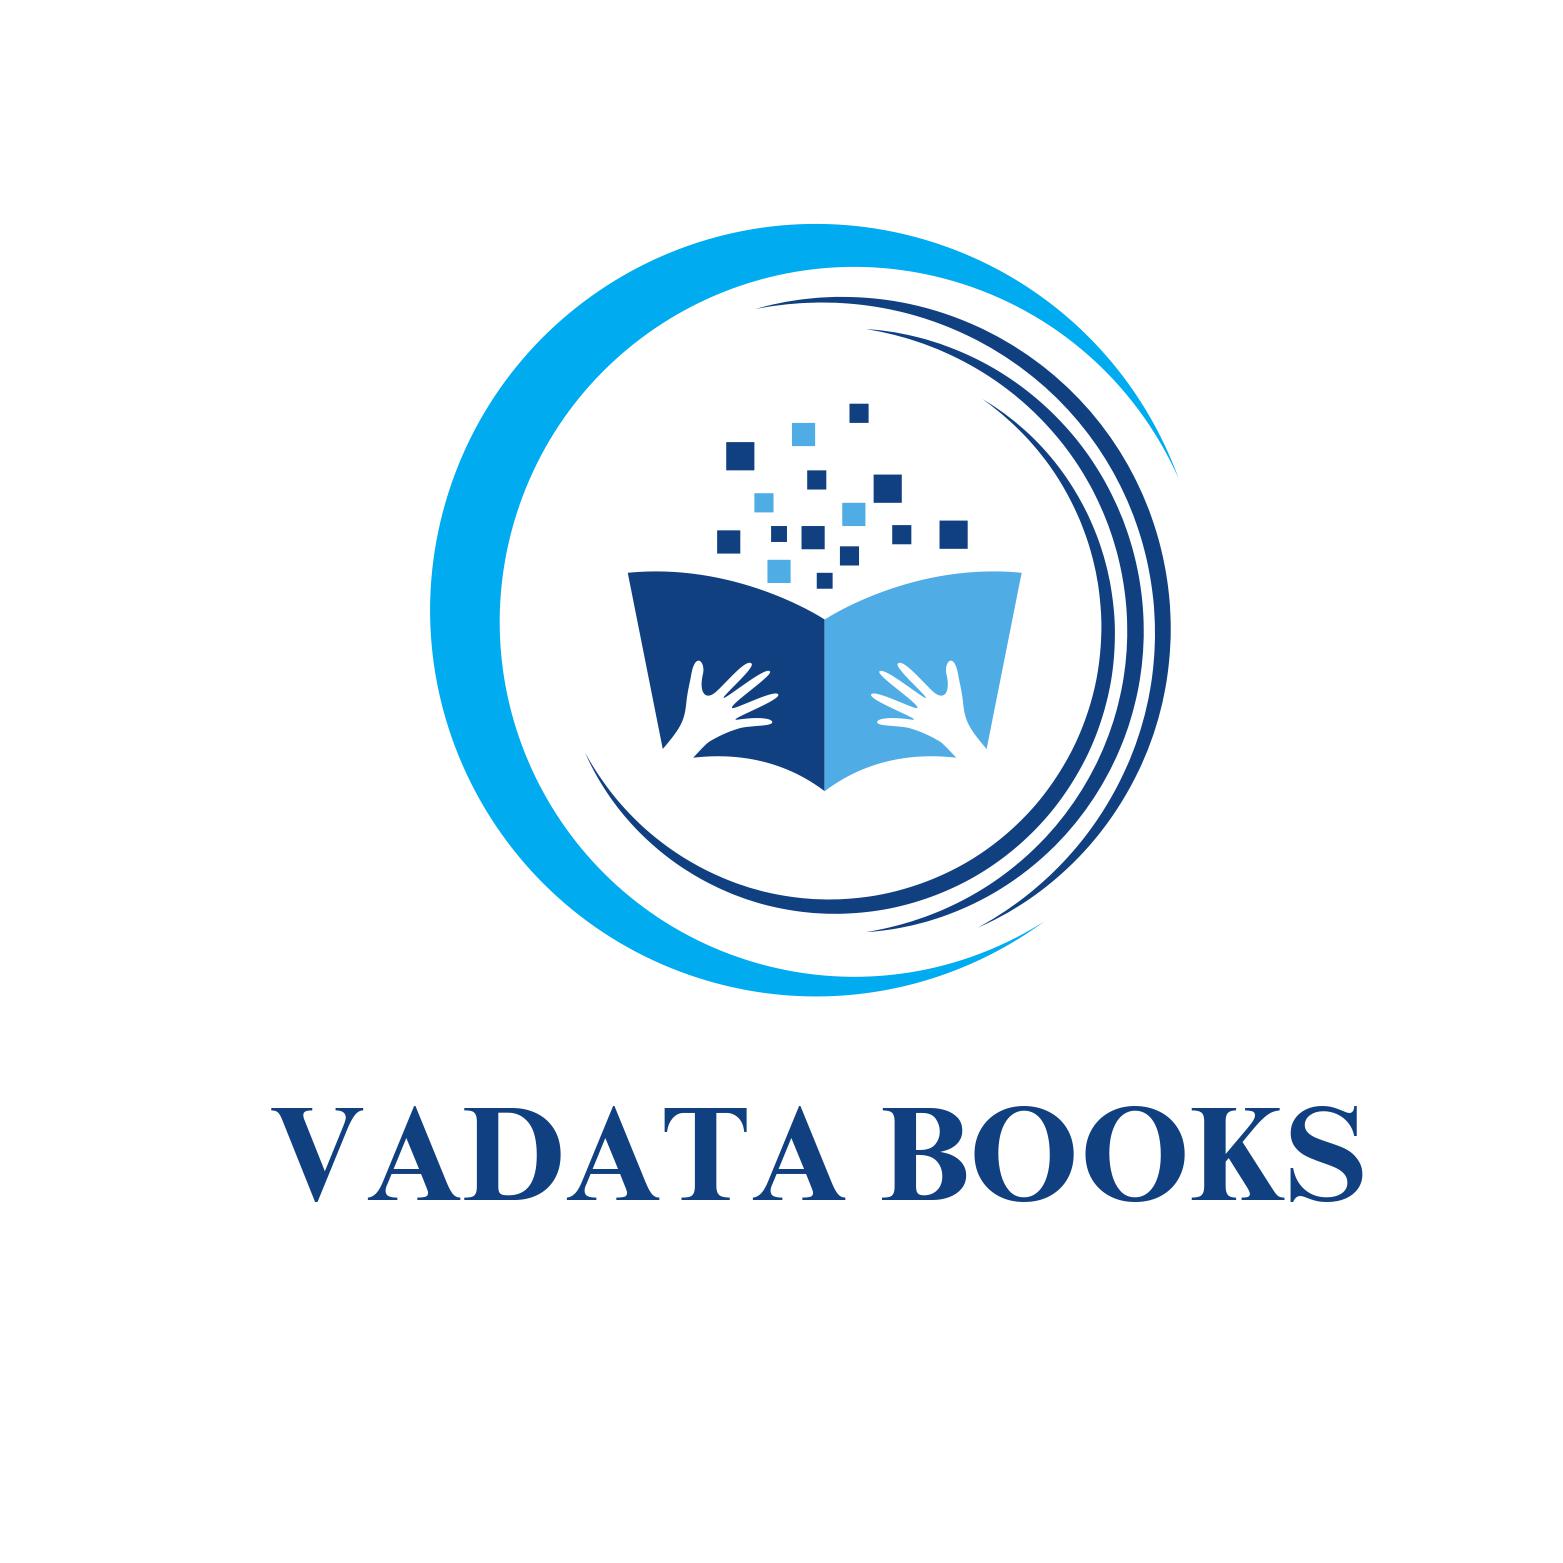 VADATA BOOKS